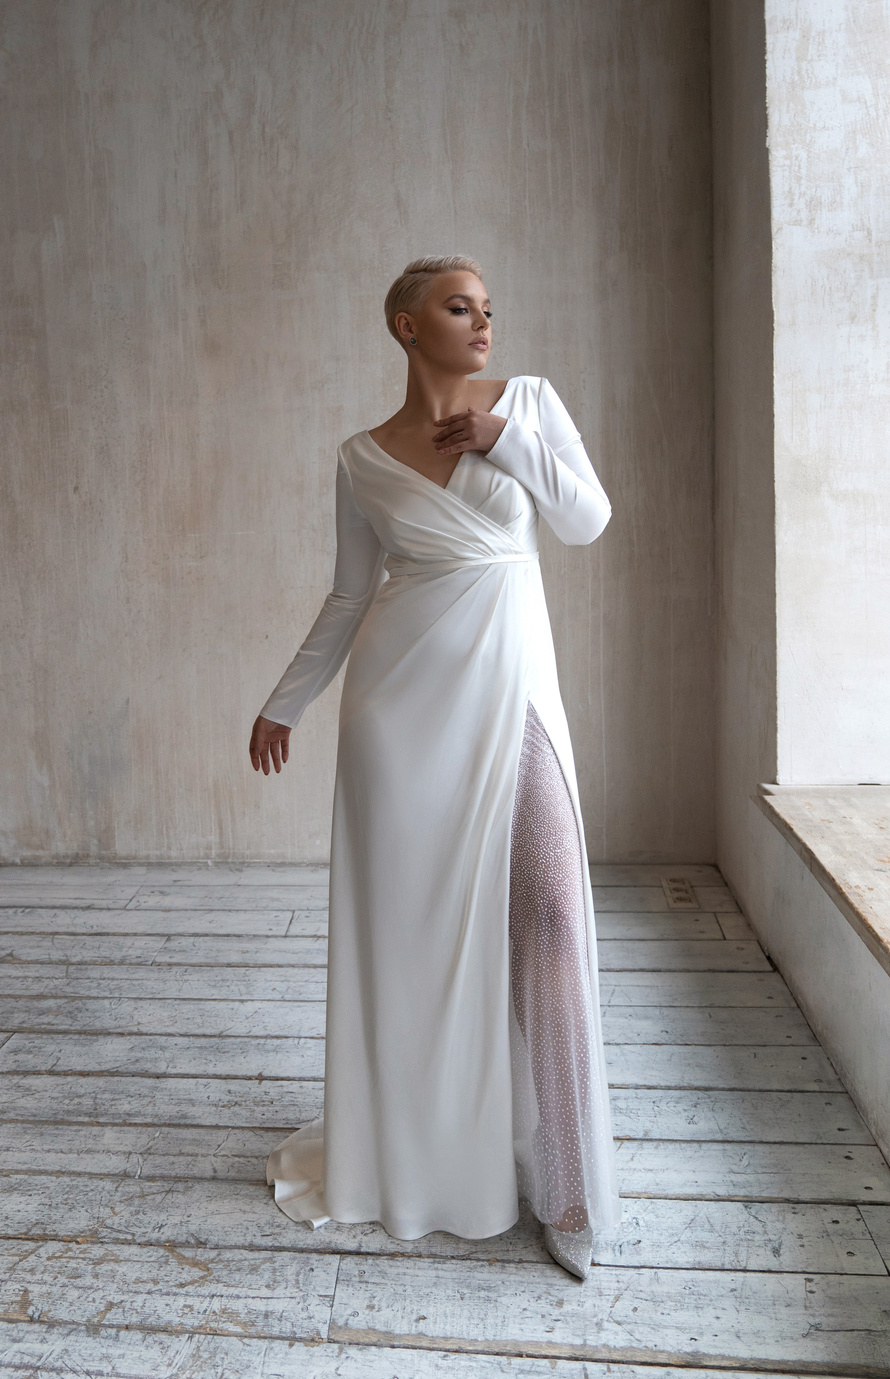 Свадебное платье «Оруэл плюс сайз» Марта — купить в Краснодаре платье Оруэл из коллекции 2021 года